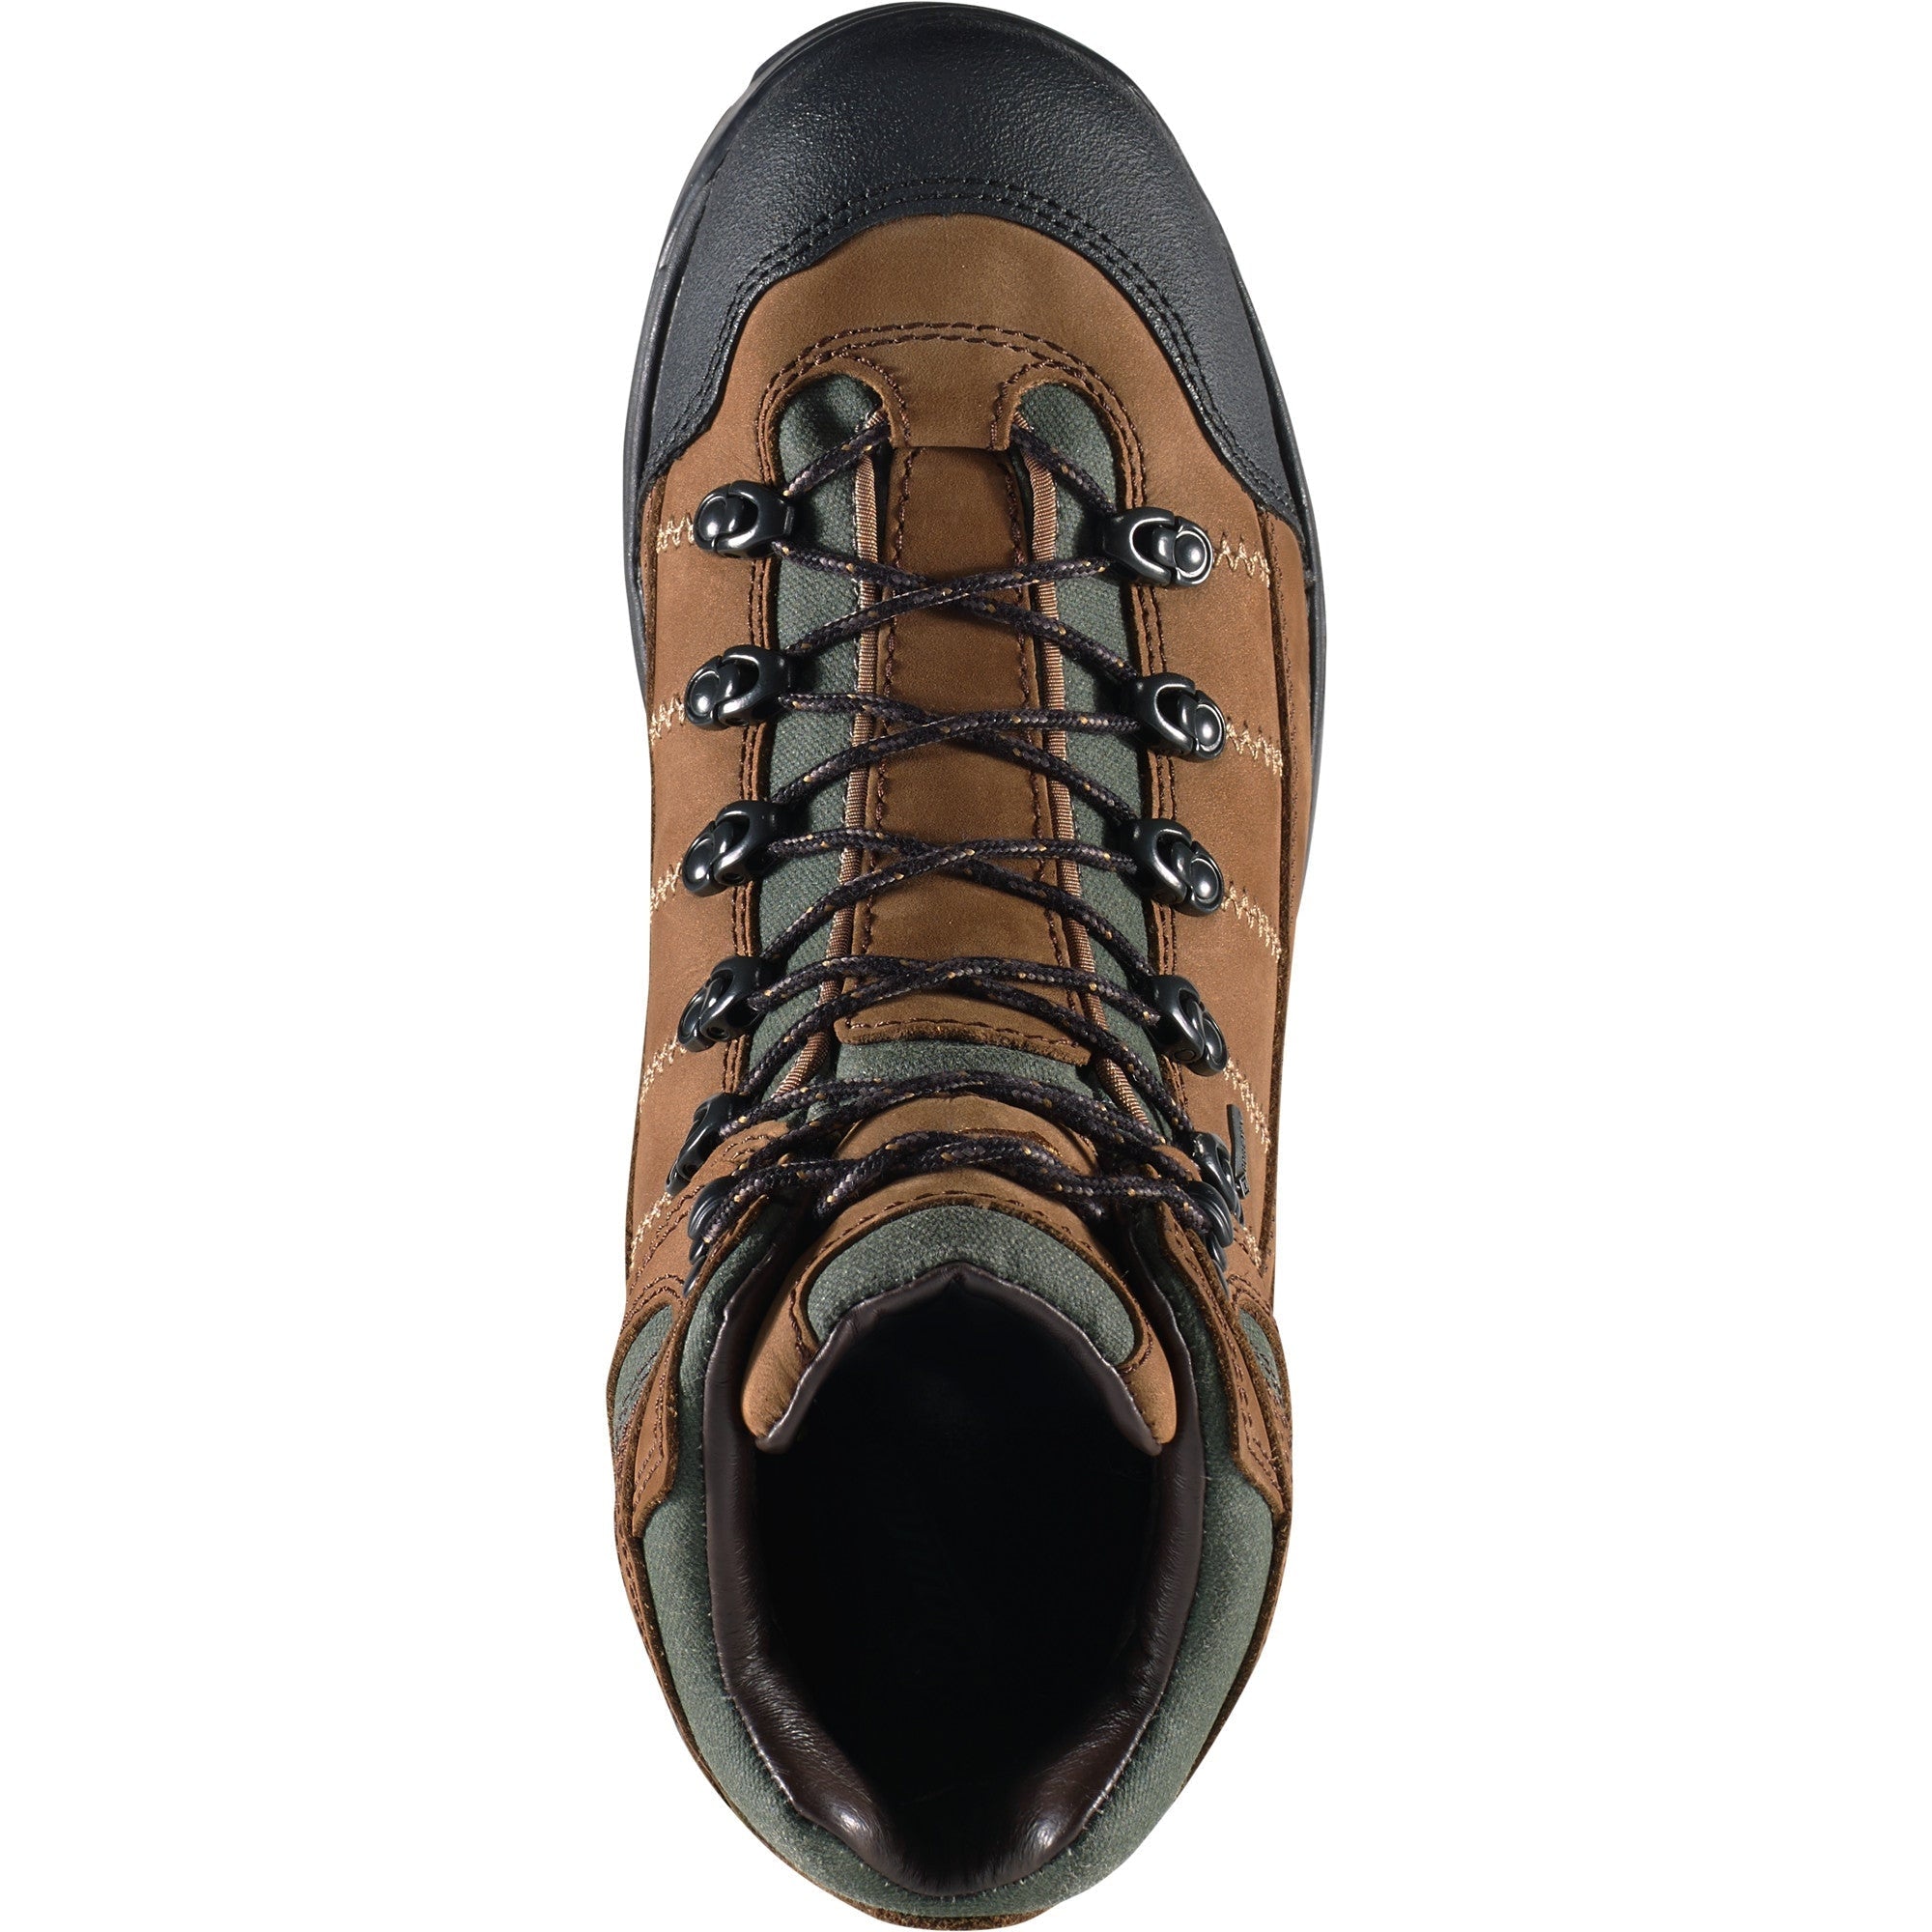 Danner Men's 453 5.5" WP Hiking Boot - Dark Tan - 45364  - Overlook Boots